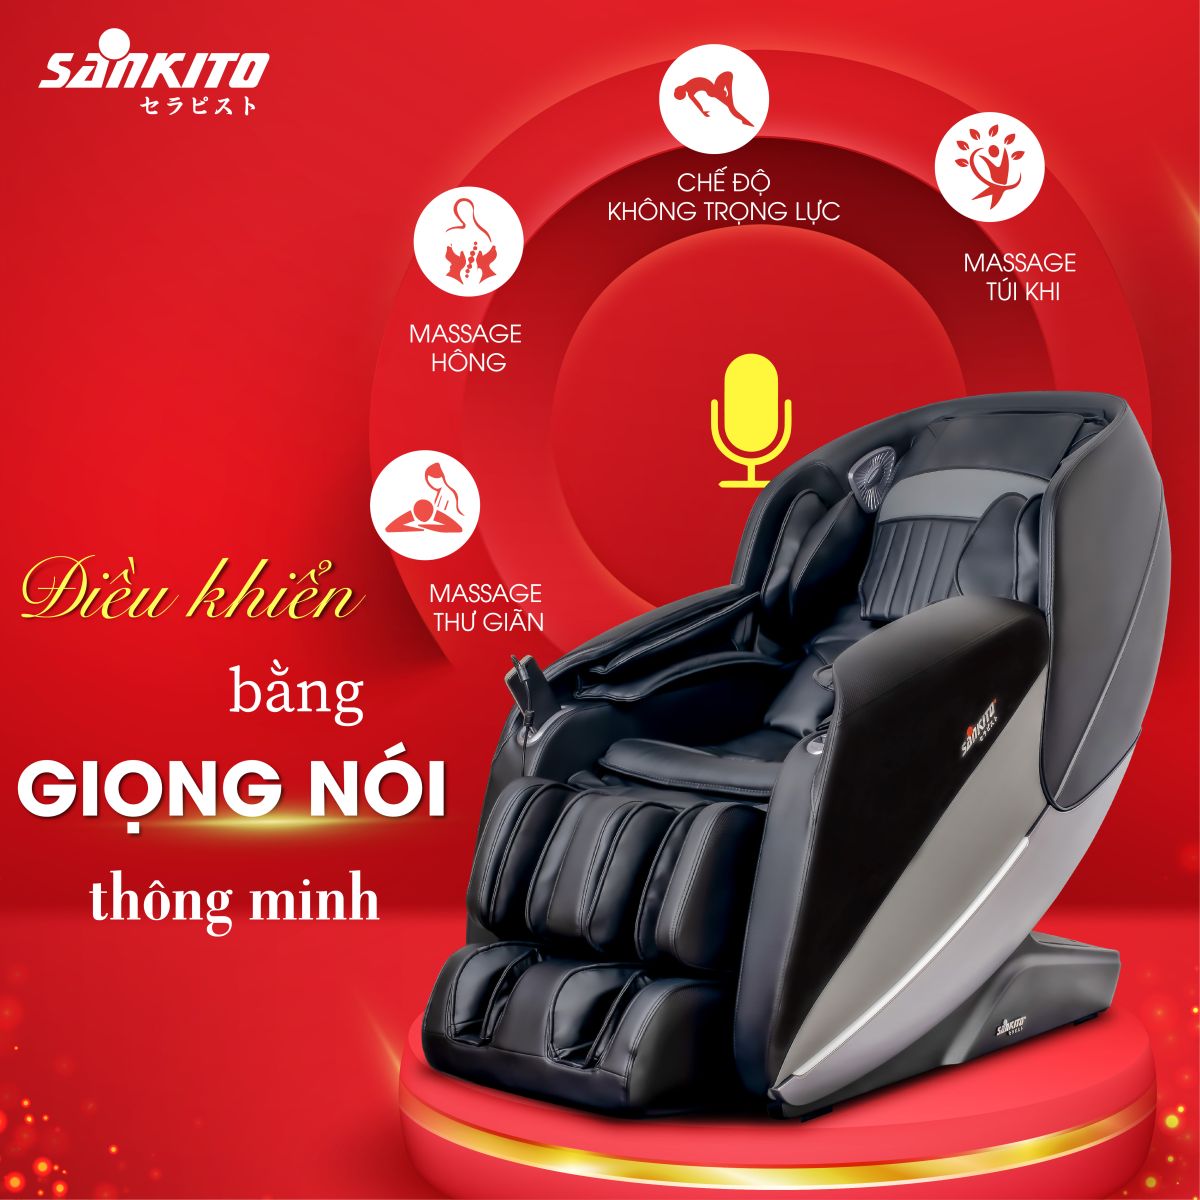 Ghế massage Sankito S-80 Chức năng điều khiển bằng giọng nói